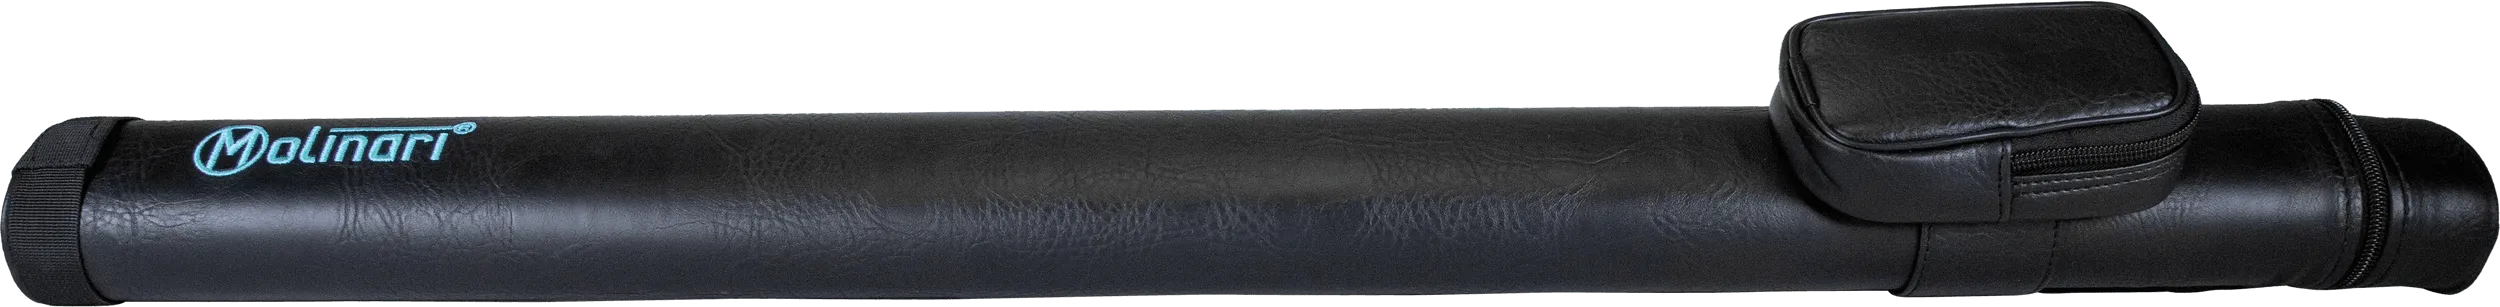 Molinari® retro cue tube in black color, front view